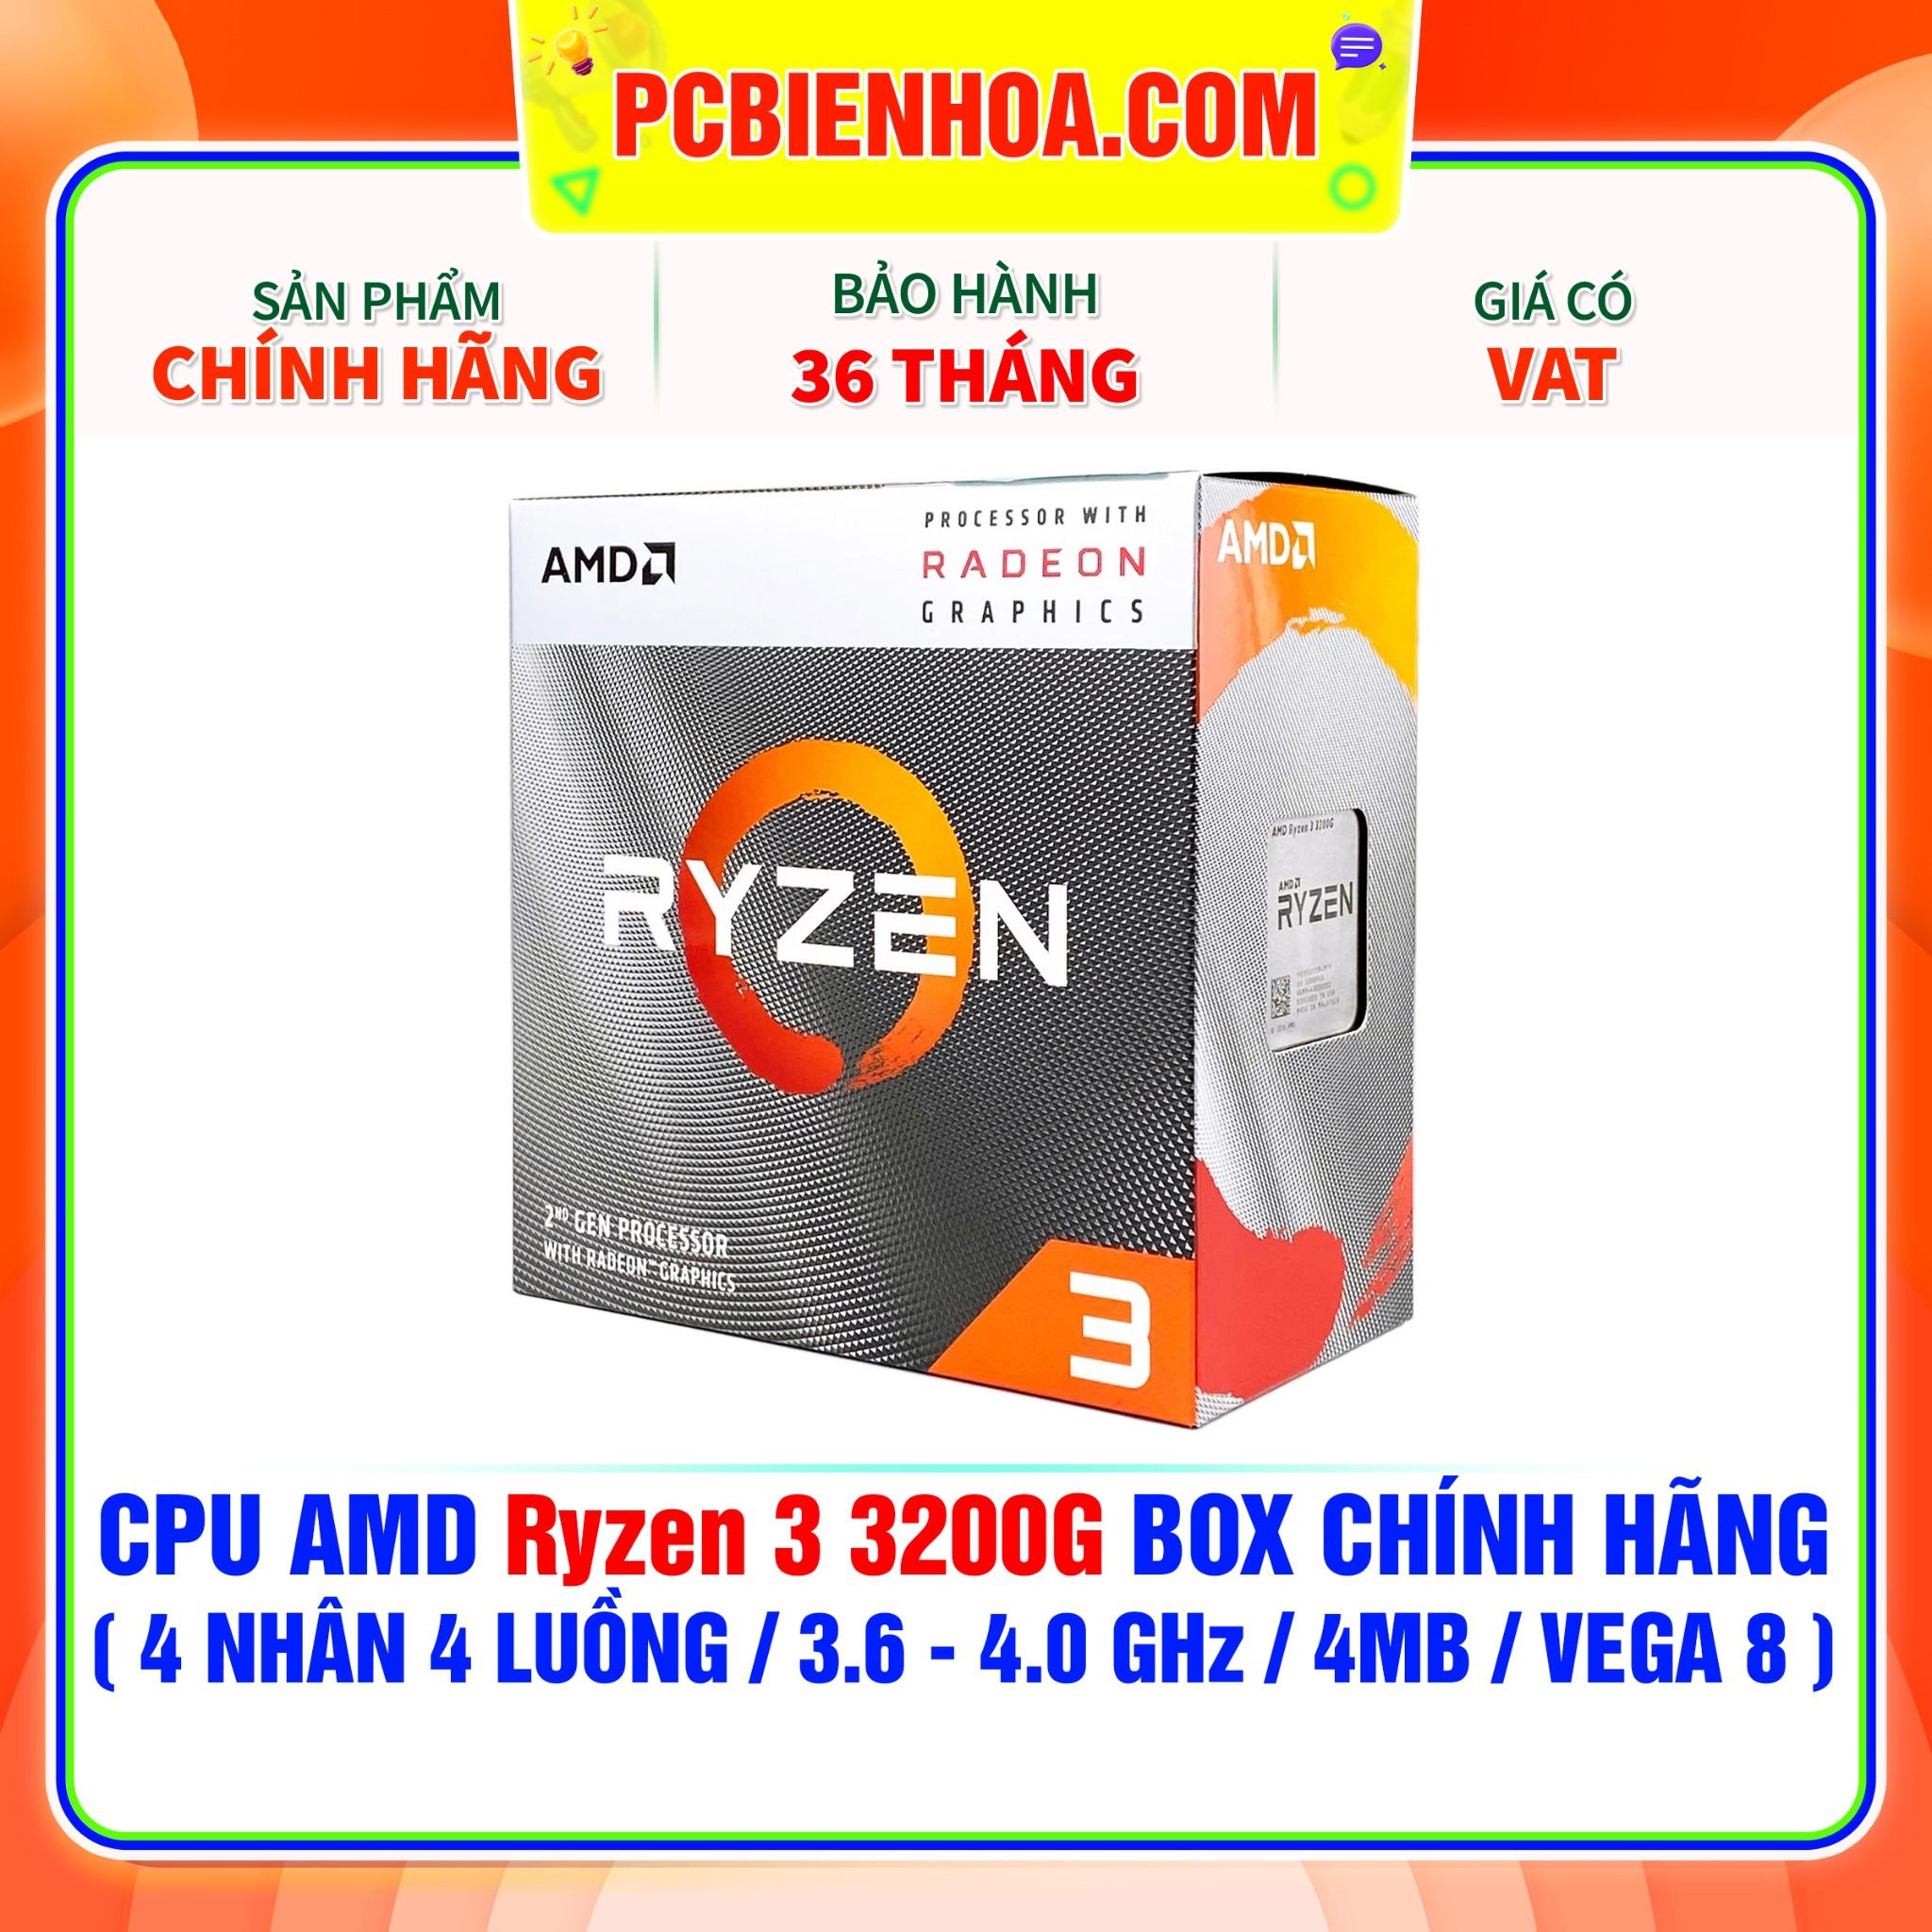  CPU AMD Ryzen 3 3200G BOX CHÍNH HÃNG ( 4 NHÂN 4 LUỒNG / 3.6 - 4.0 GHz / 4MB / VEGA 8 ) 